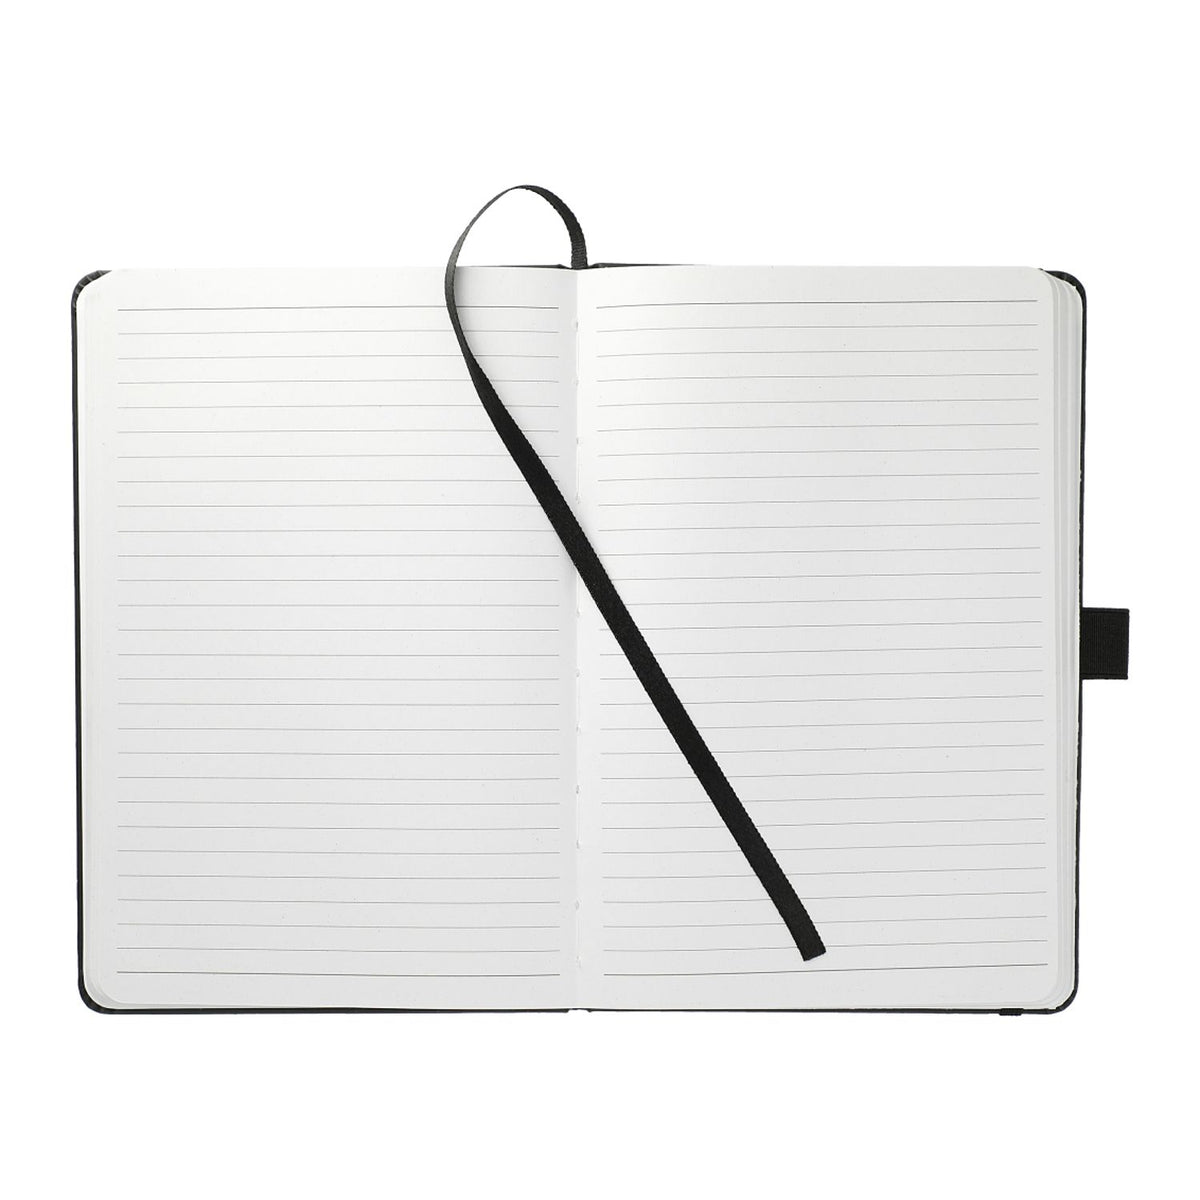 5.5” x 8.5” Mela Bound JournalBook